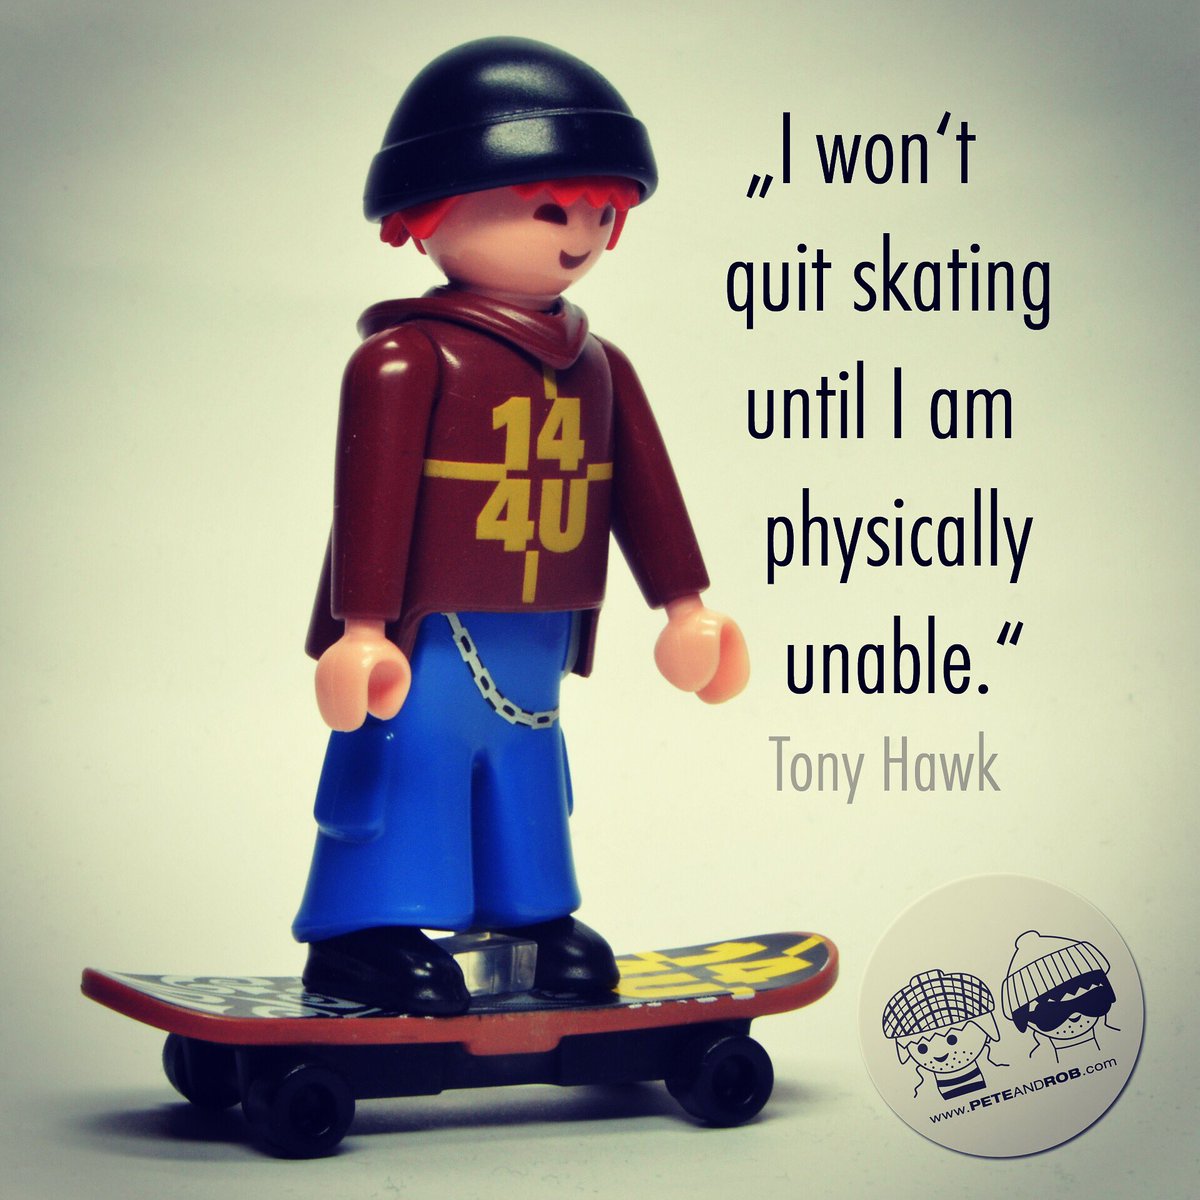 'I won't quit skating until I am physically unable.' - Tony Hawk
...
#playmobil #skateboarding #skate #skatelife #skatecrunch #thrasher #playmobilfans #playmobil4754 #playmobilspecial #skaterboy #playmobilfigures #playmobilmania #playmobilworld #playmobillovers #playmobils